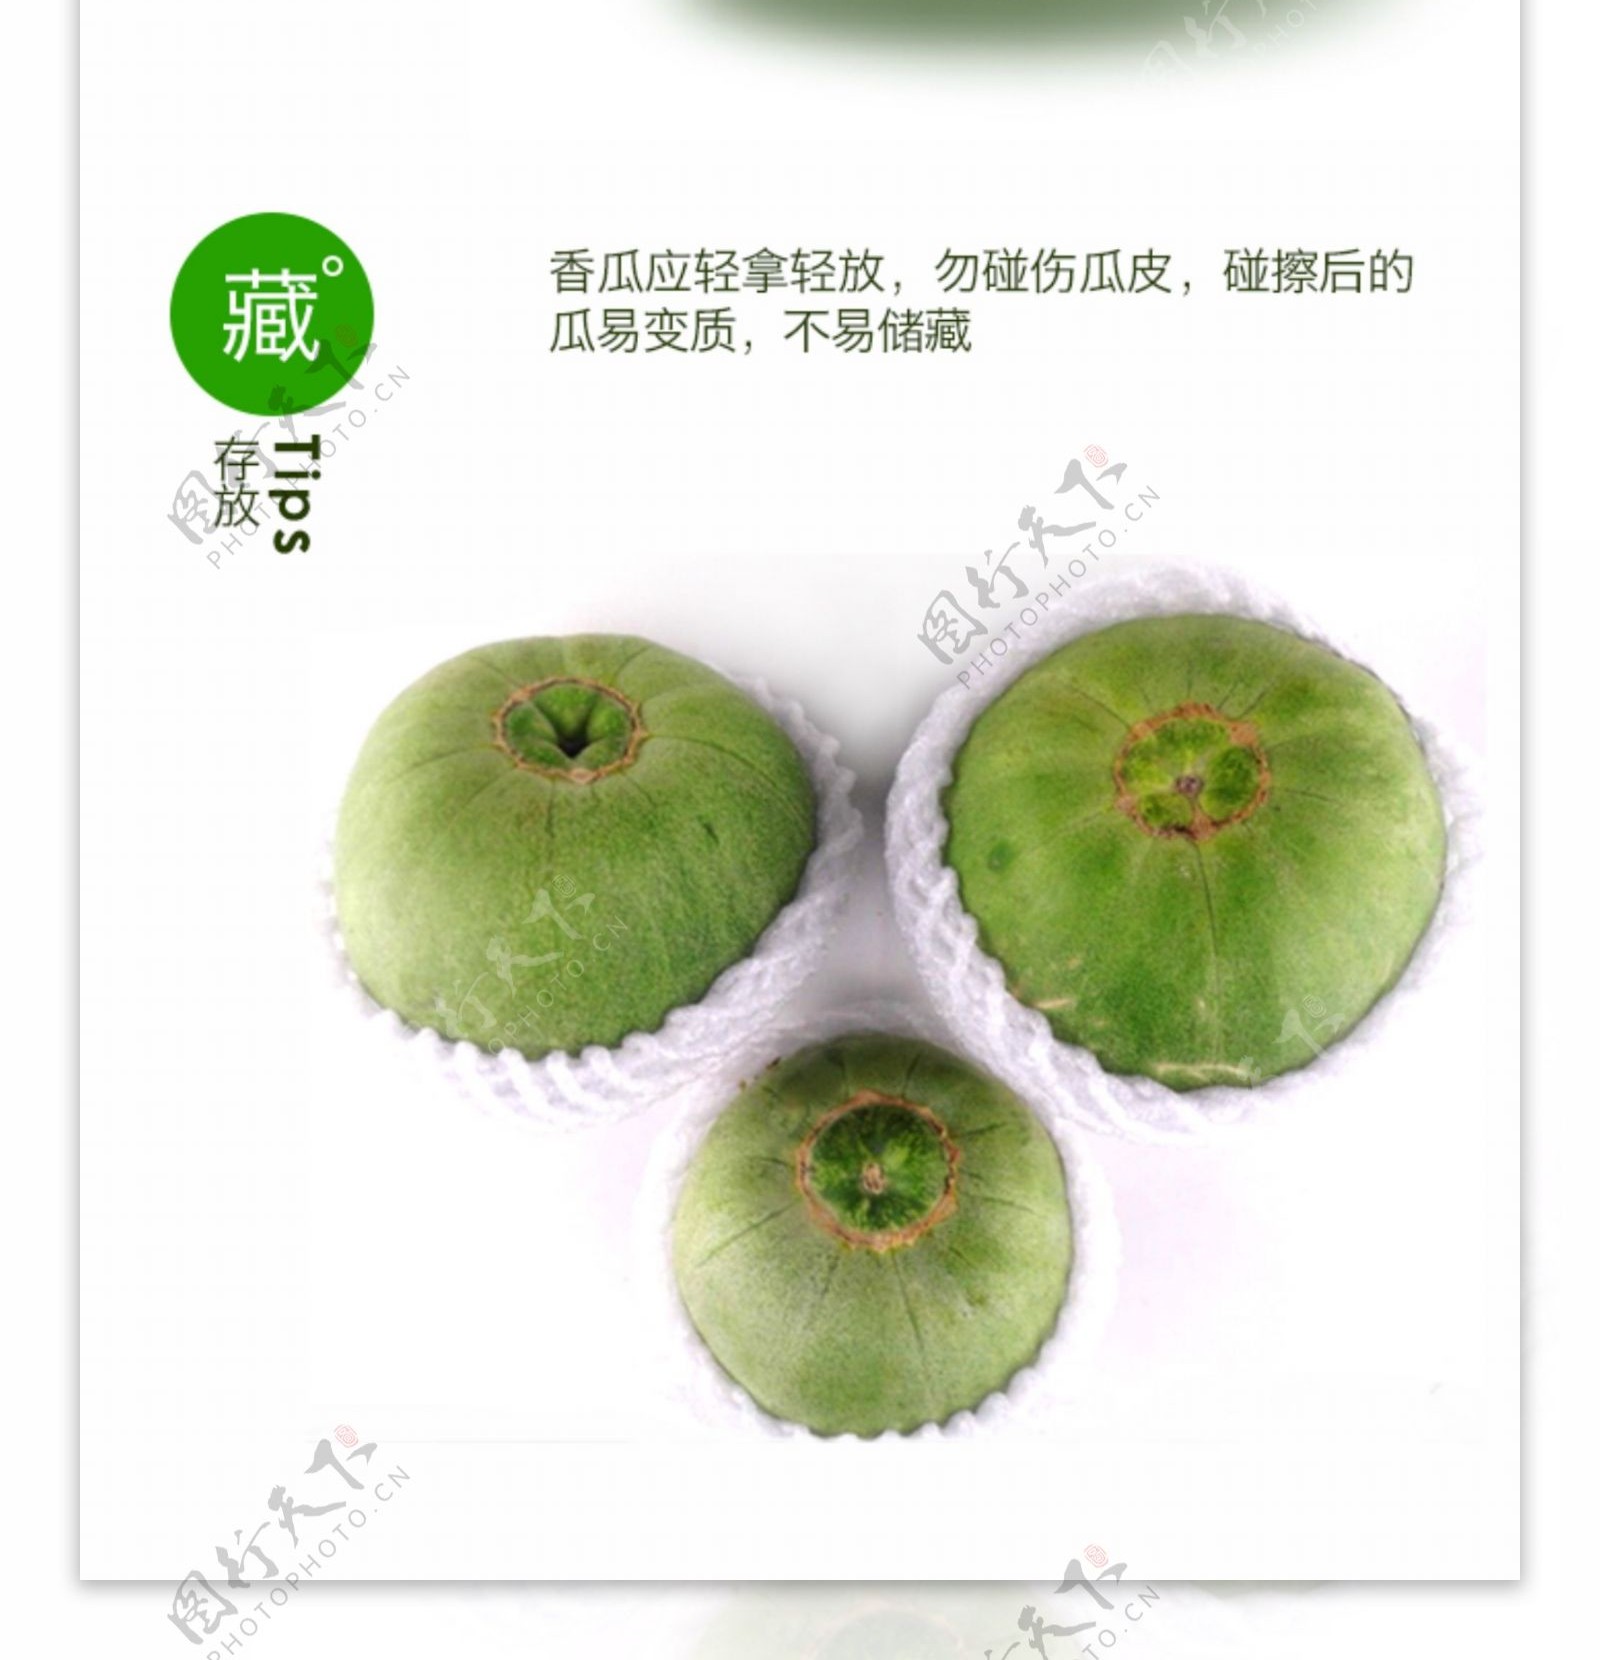 绿宝瓜产品详情页